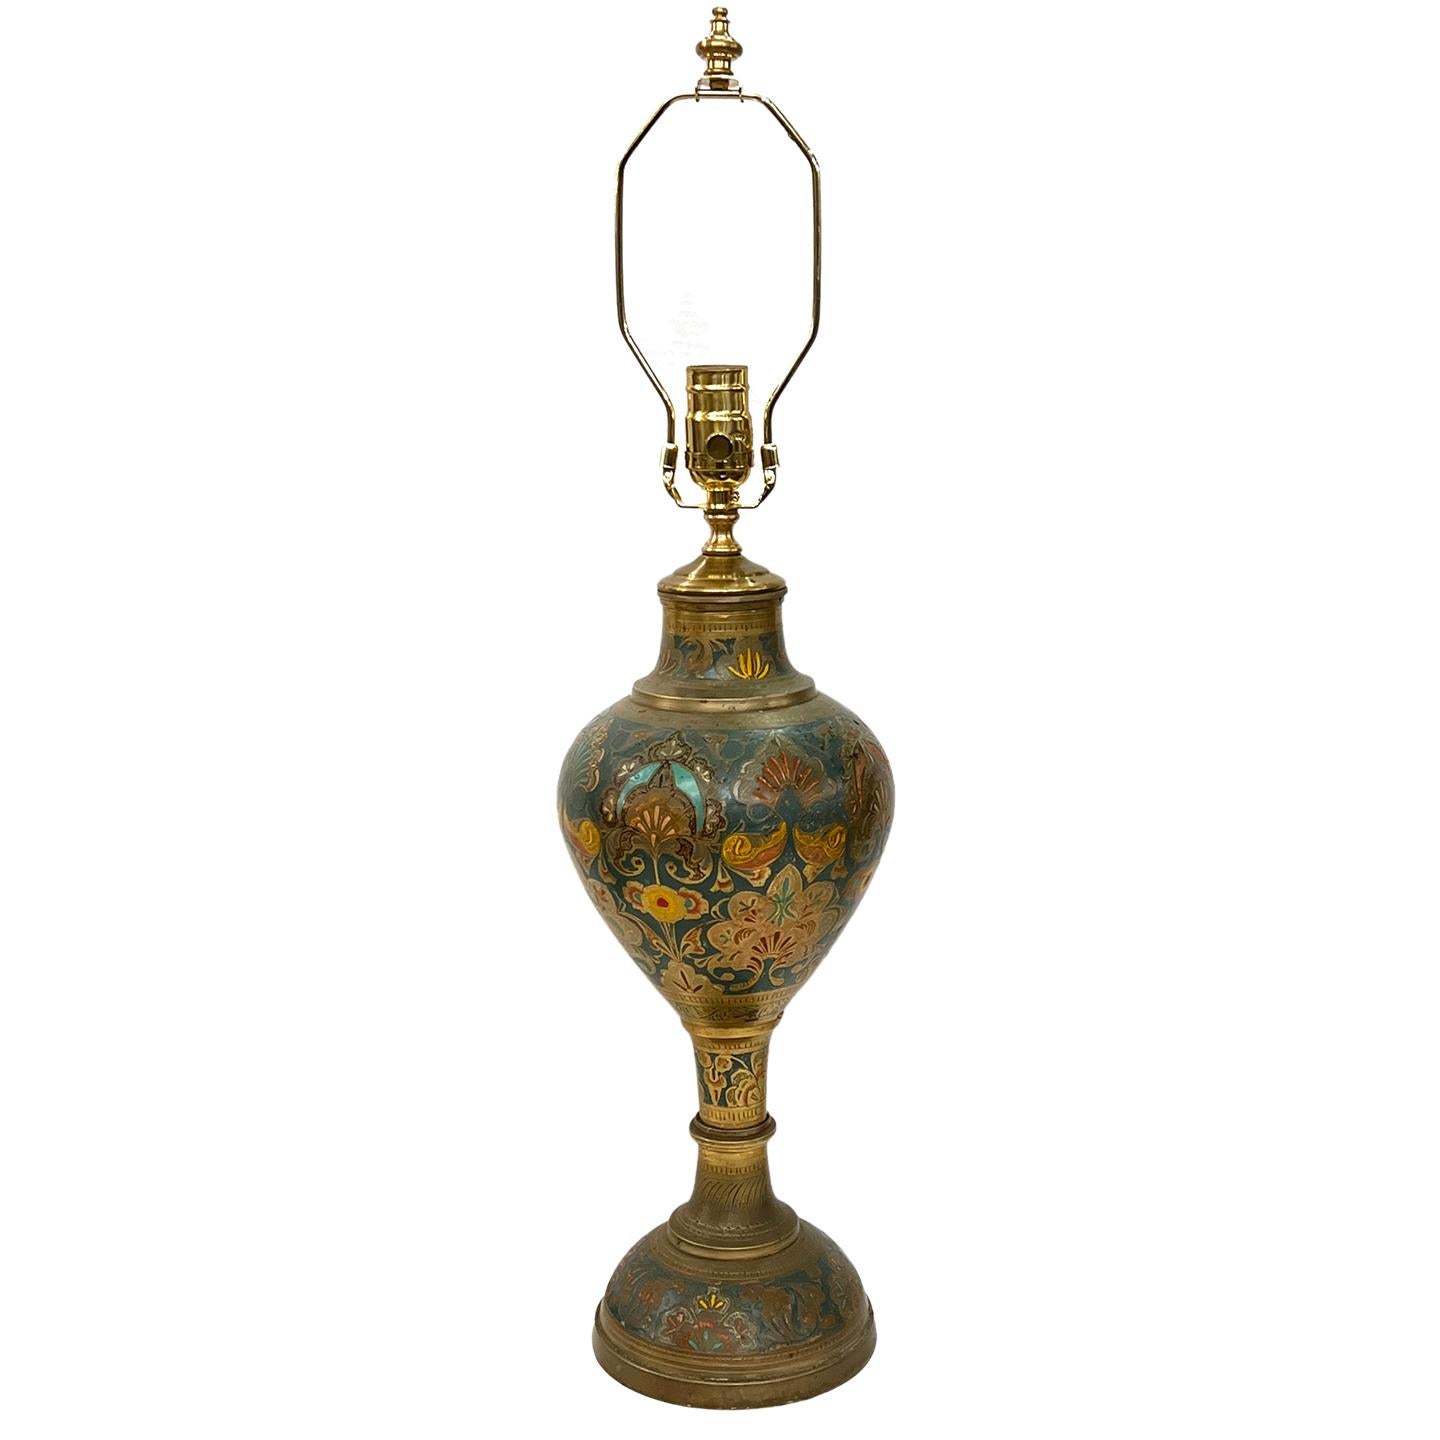 Lampe de table en métal du Moyen-Orient, gravée et polychromée, datant des années 1920.

Mesures :
Hauteur du corps : 17